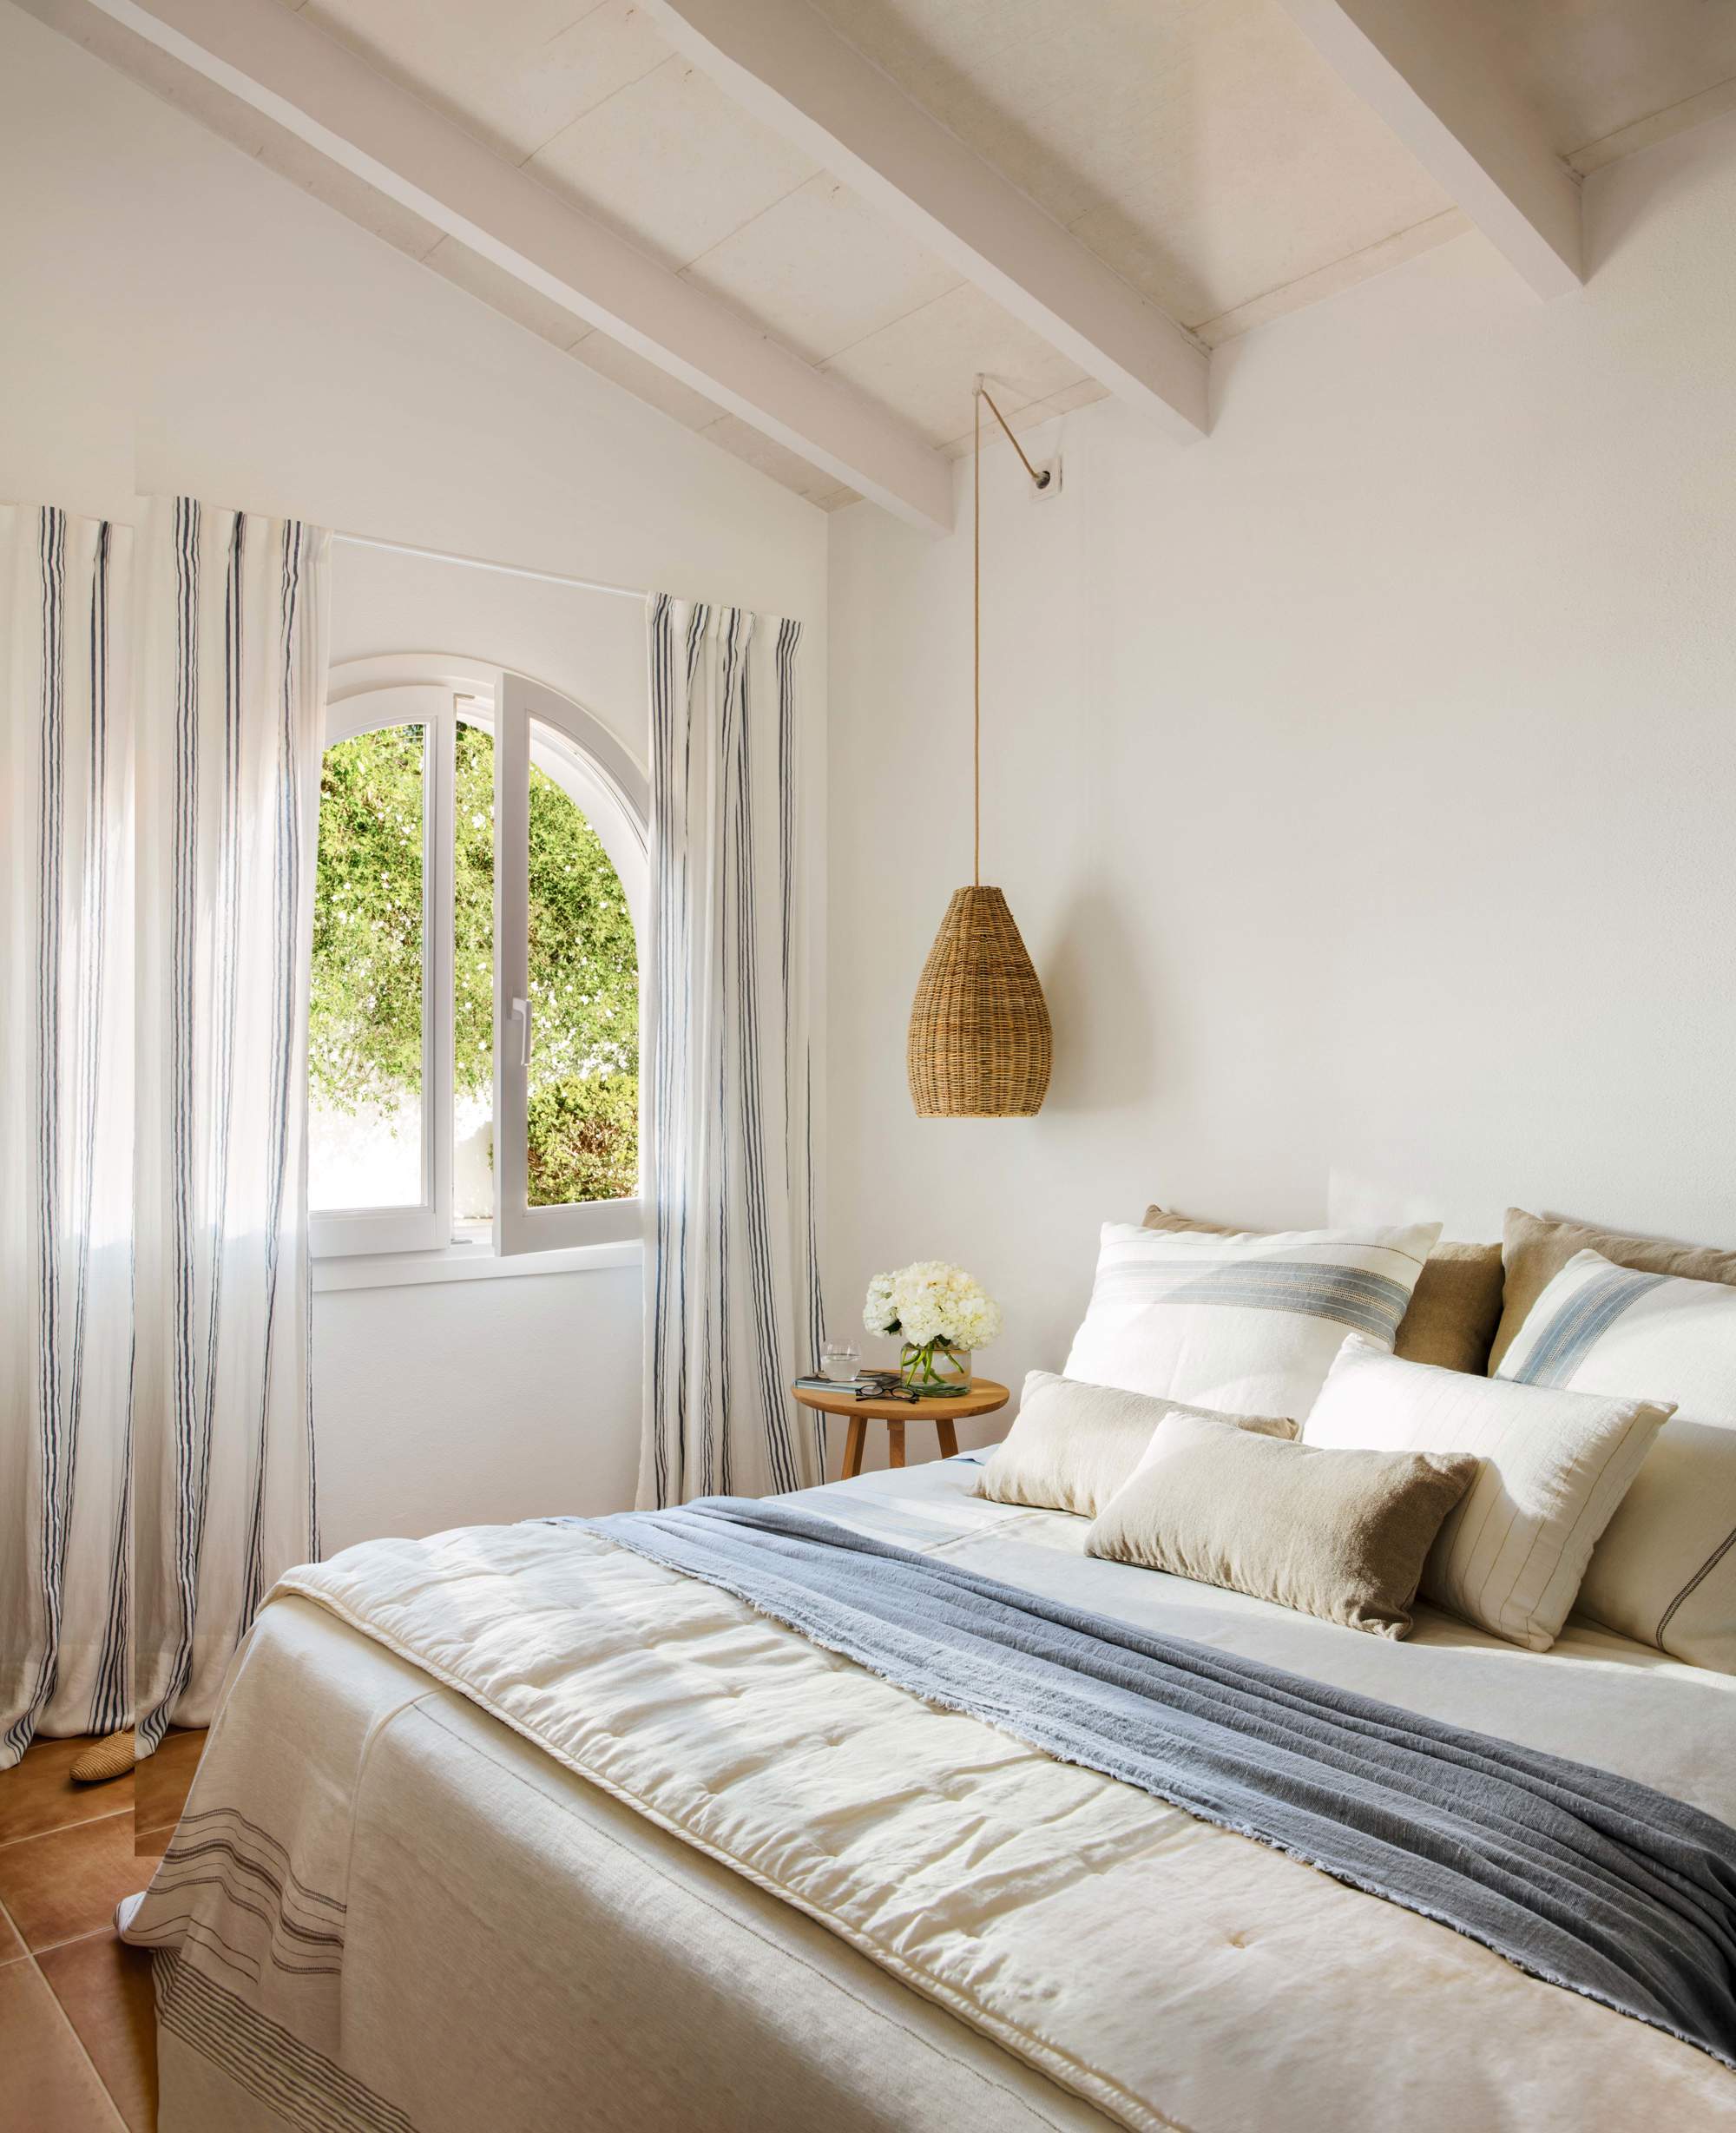 Dormitorio decorado en blanco y azul con lámparas suspendidas.